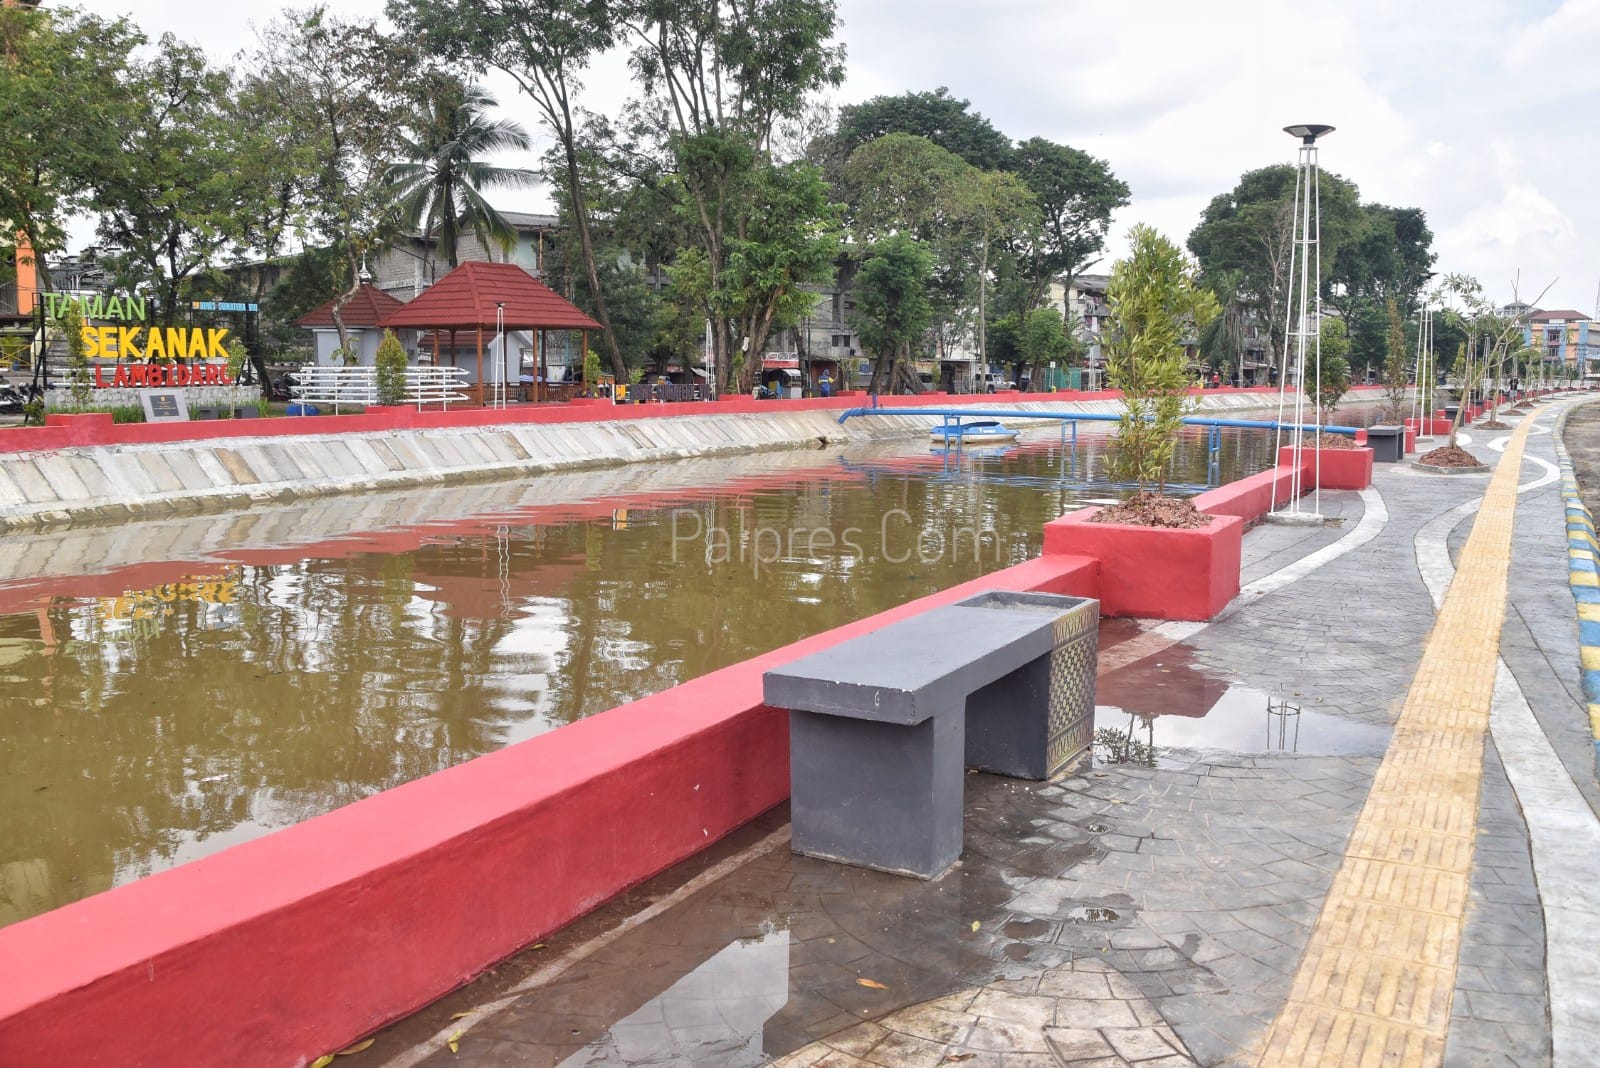 Simak! 5 Fakta Unik Sungai Sekanak Lambidaro Palembang yang Wajib Diketahui